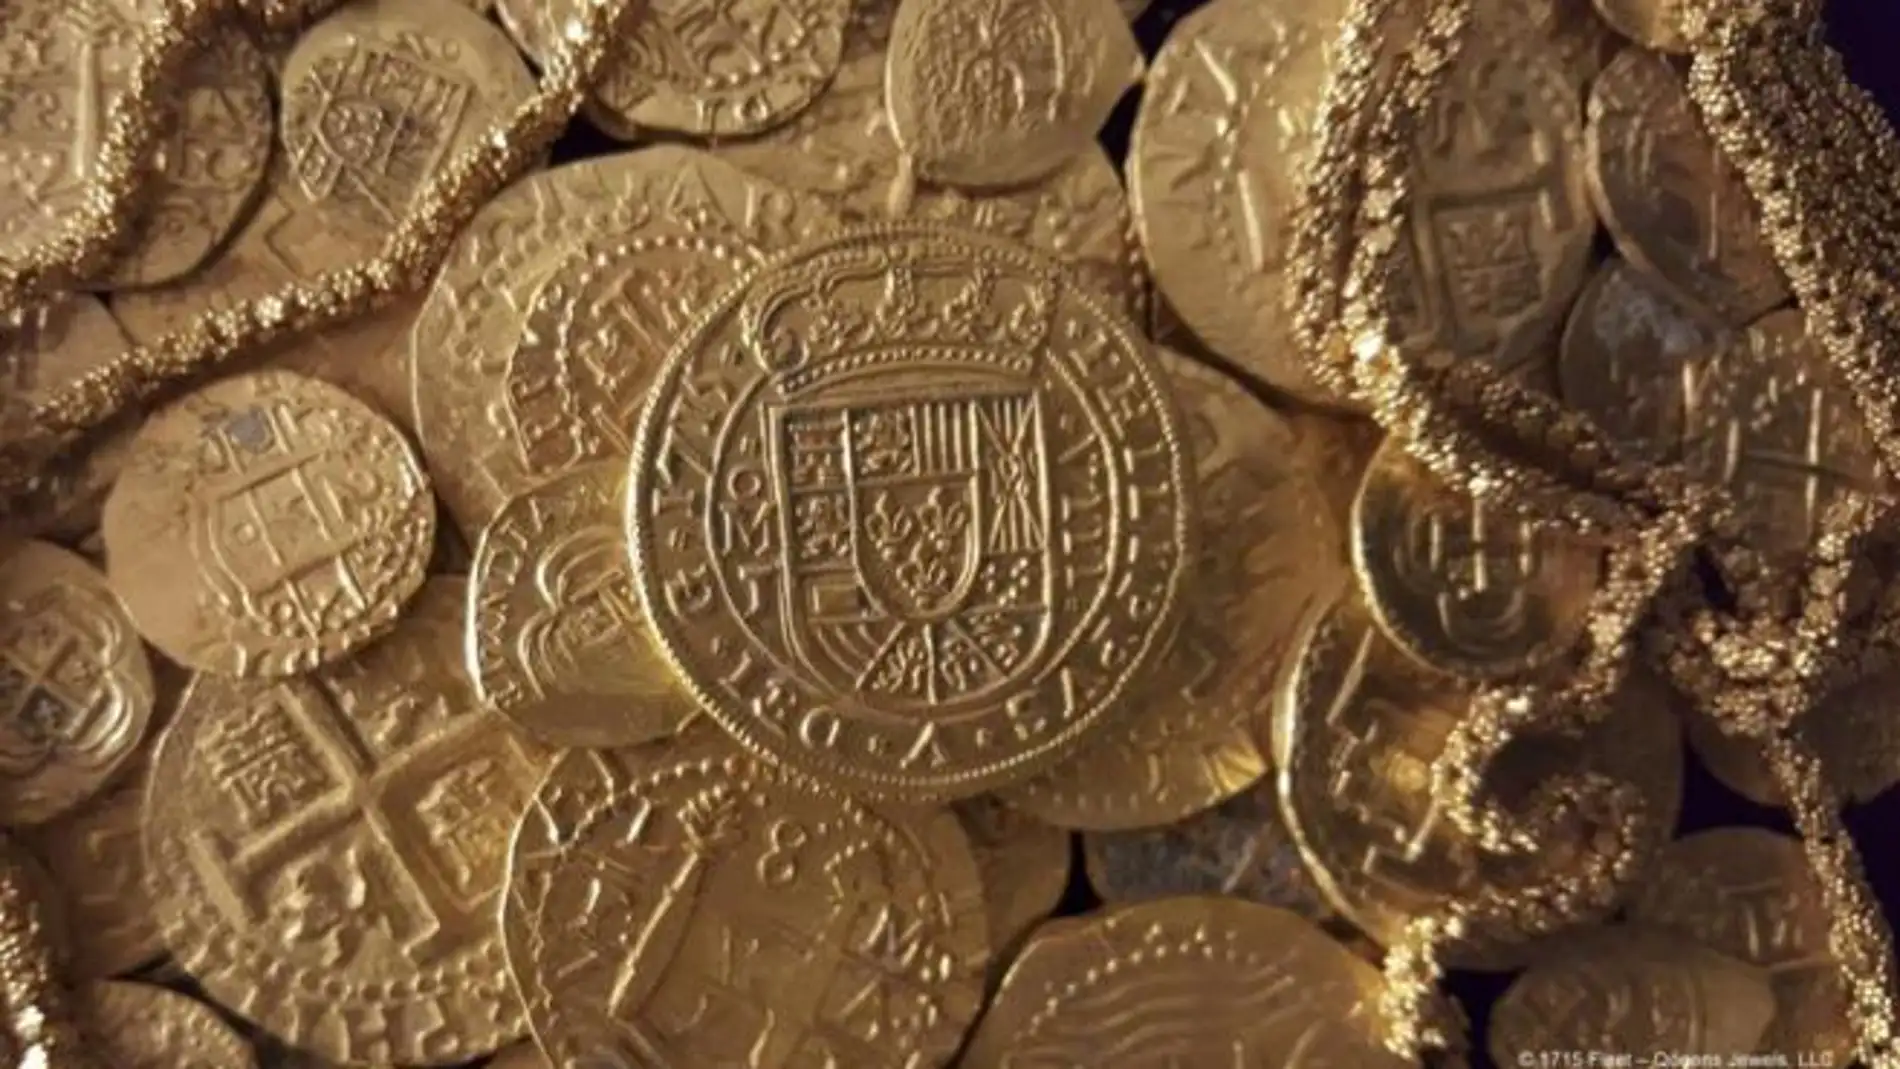 Monedas y cadena de oro halladas en el barco español